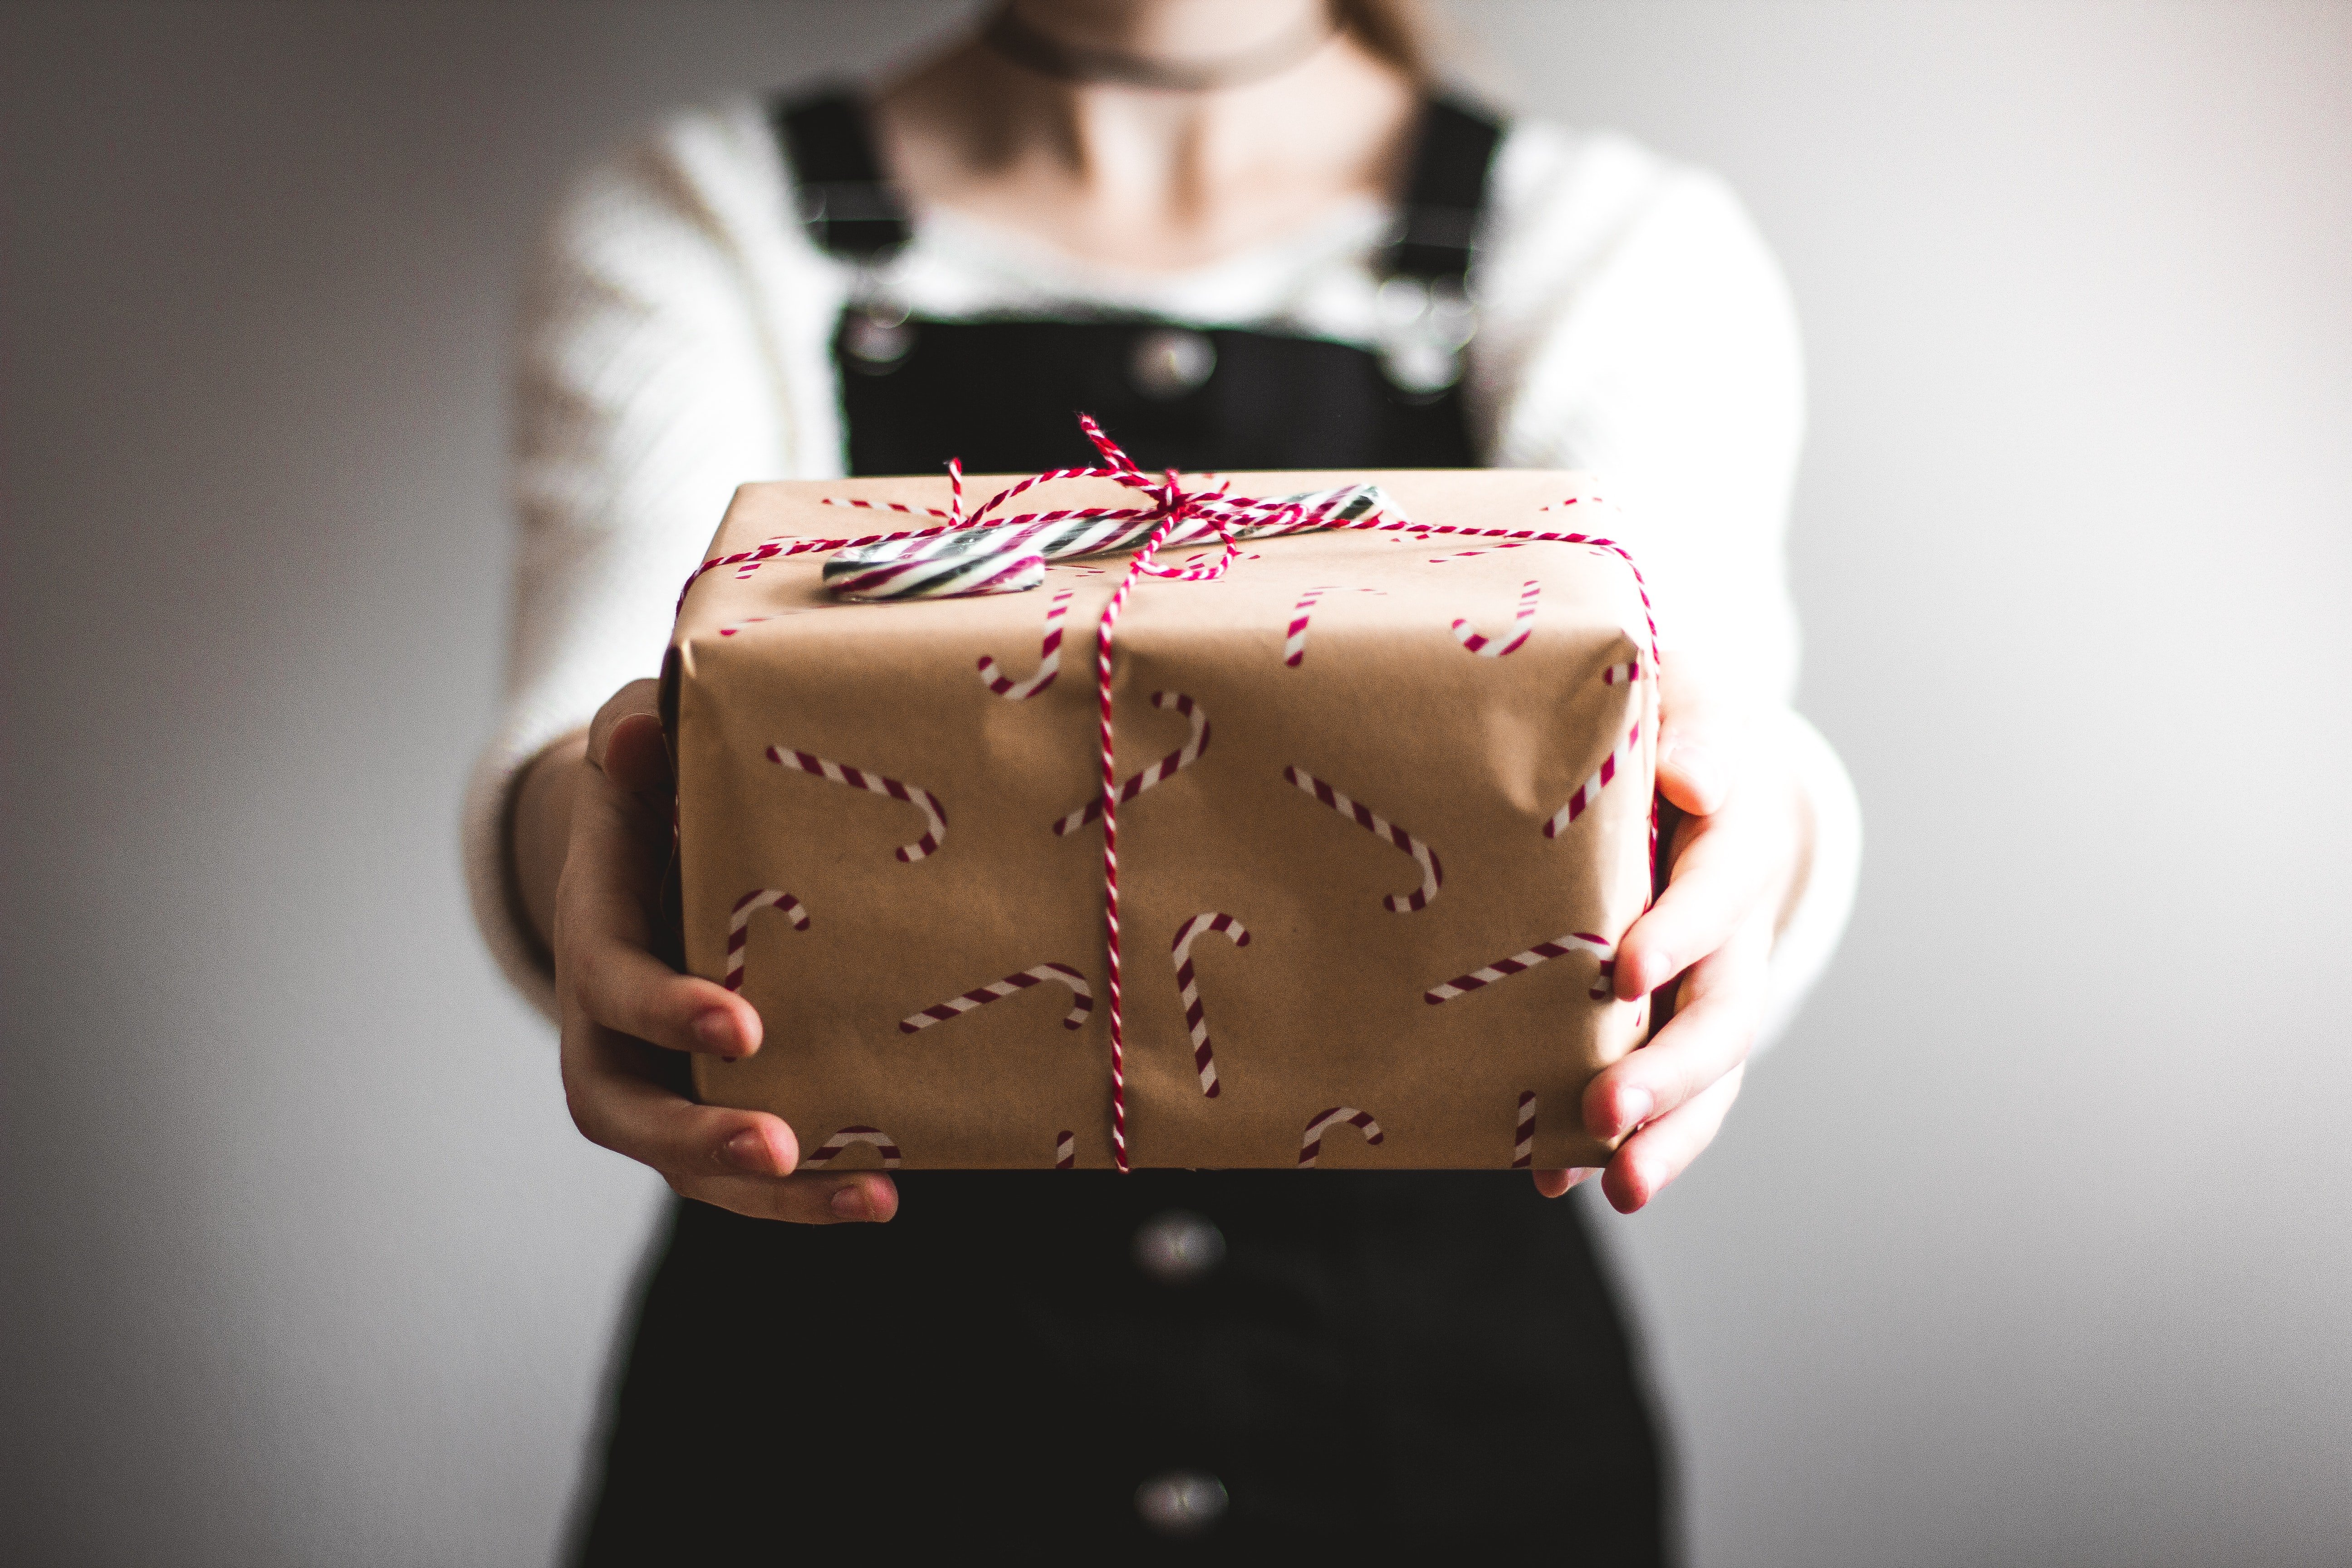 Die Leute online rieten, dass Geschenke keine Rückvergütung sind, die man im Gegenzug verlangen kann | Quelle: Unsplash